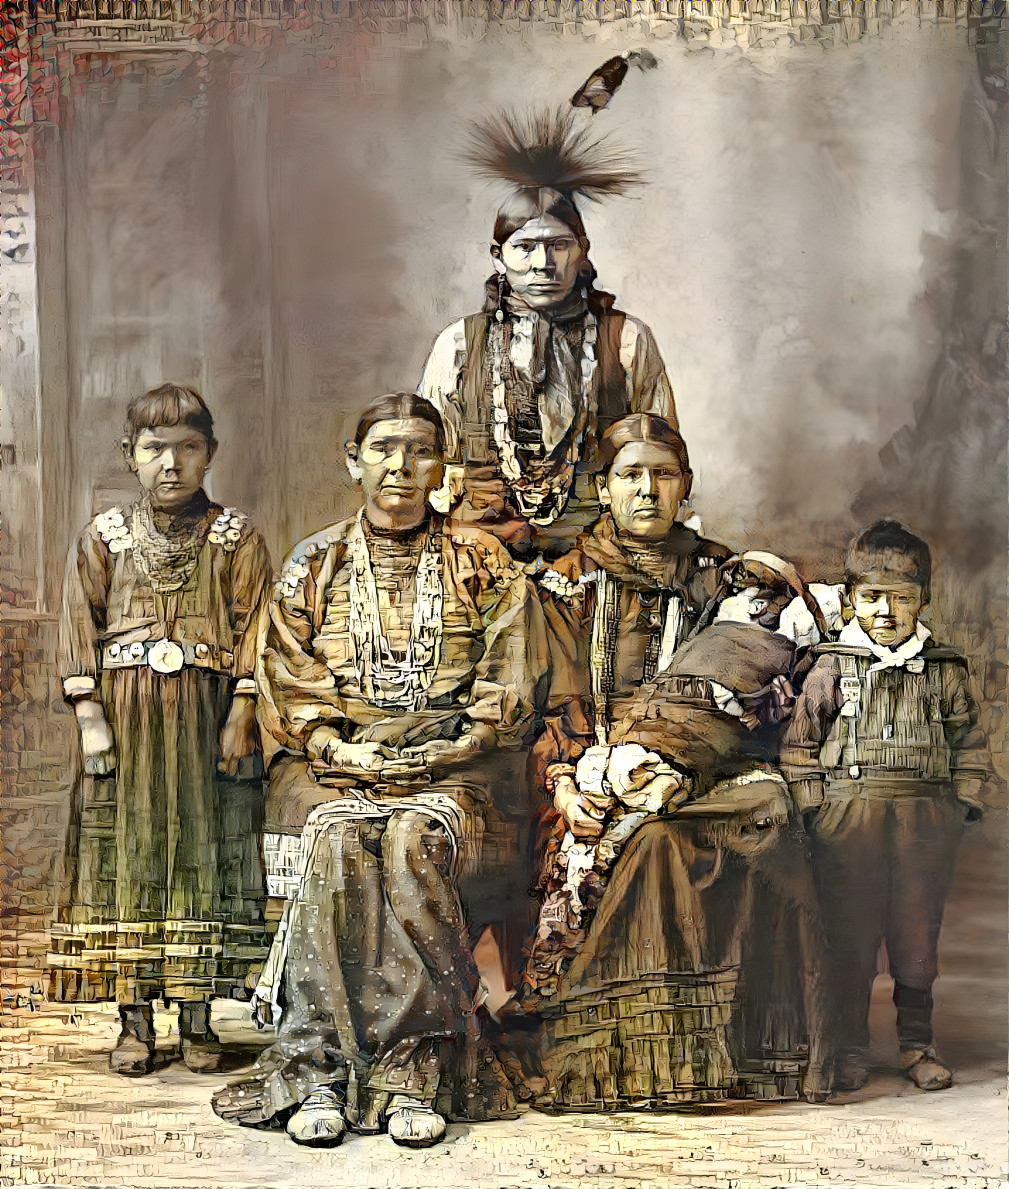 Sauk Indian family.